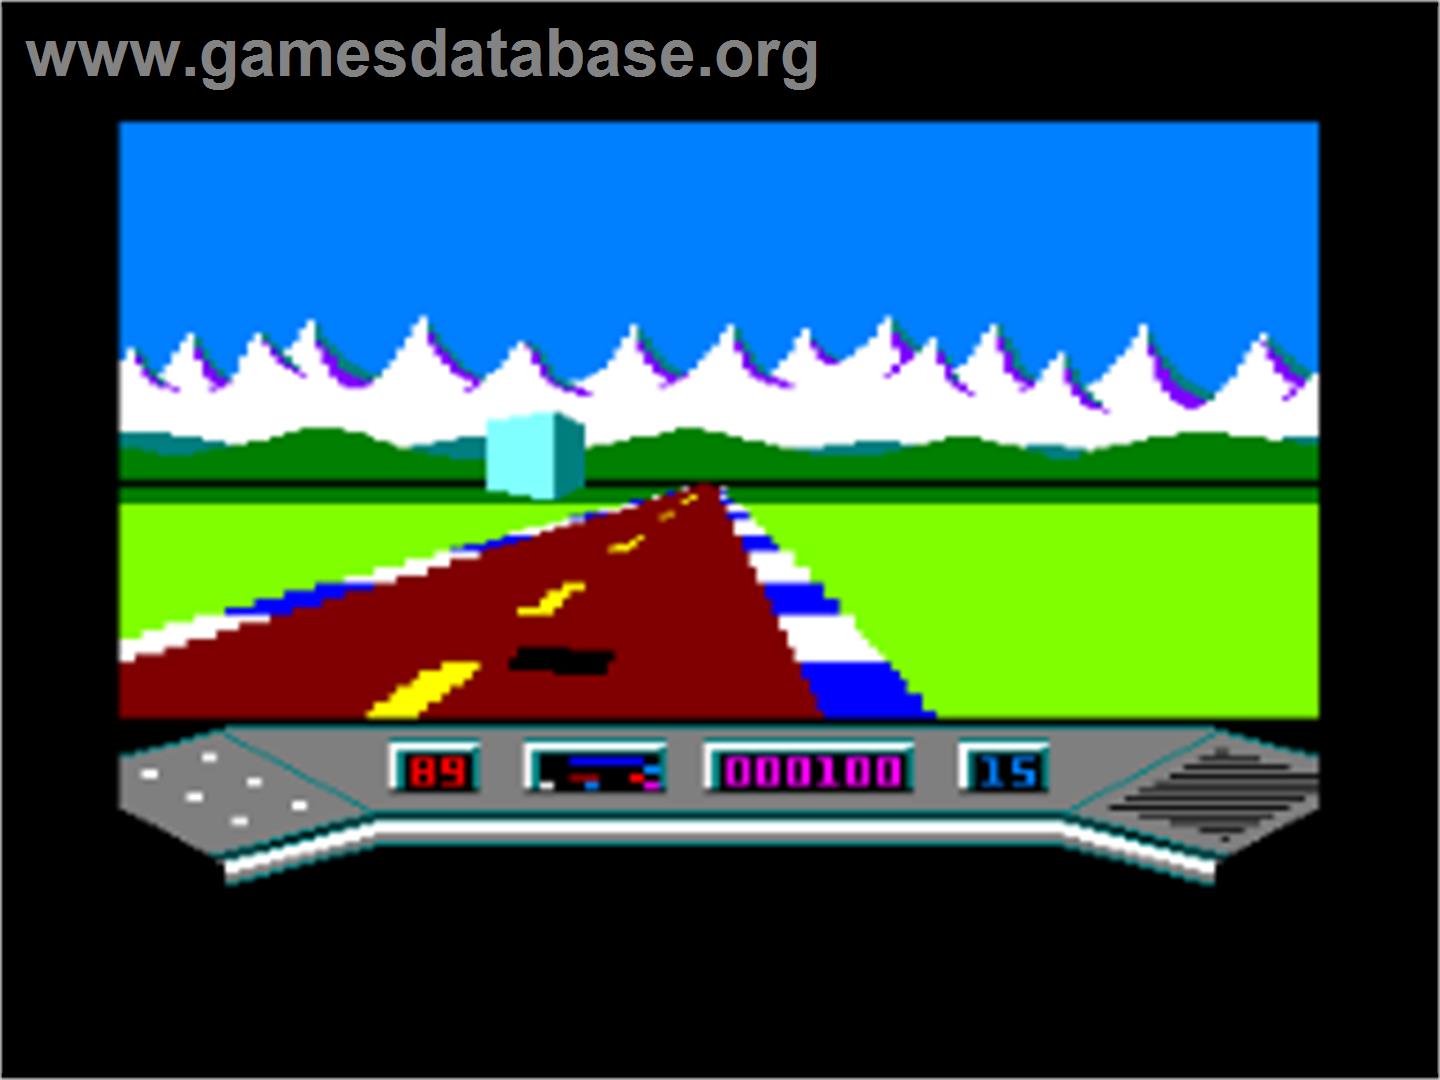 Elektraglide - Amstrad CPC - Artwork - In Game